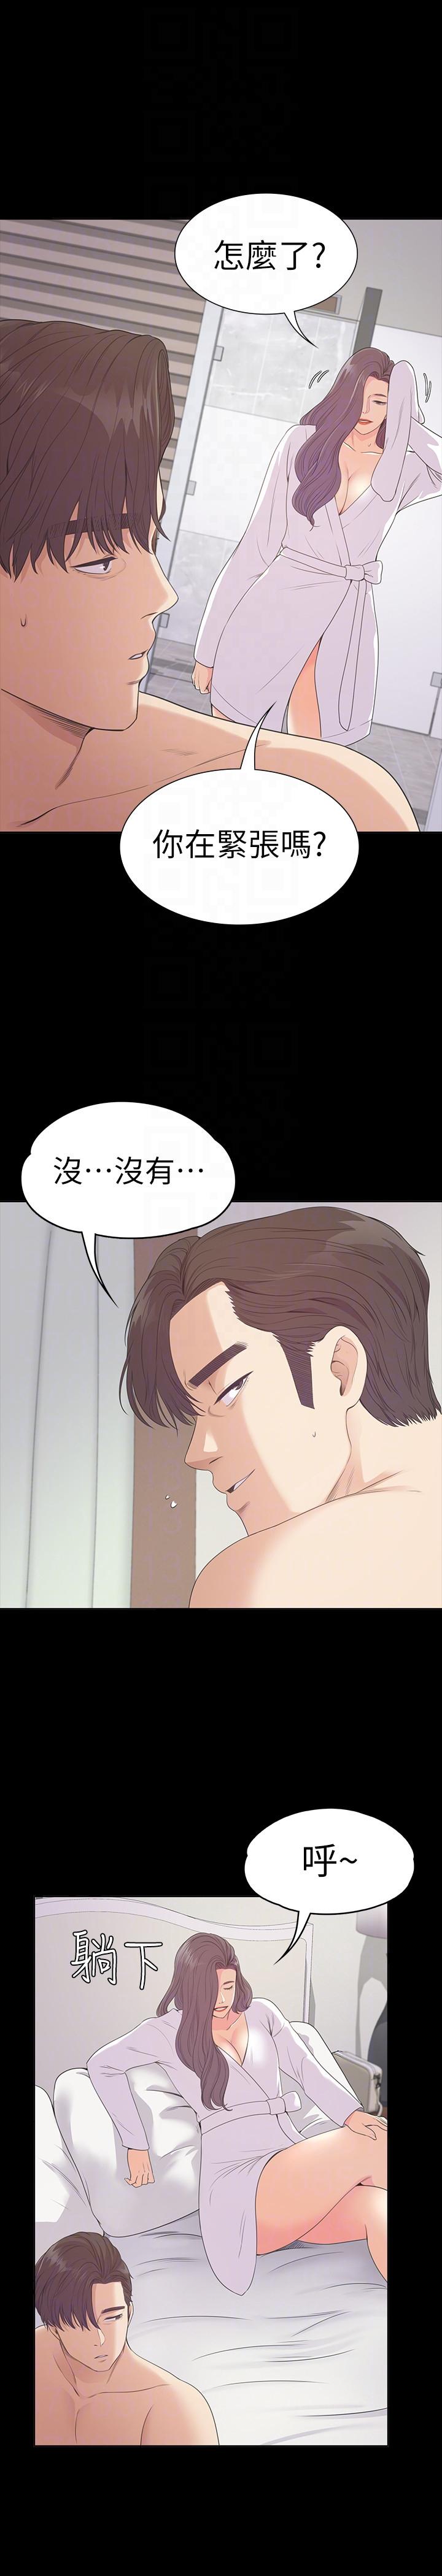 《爱上酒店妹(江南罗曼史)》漫画 第52话-开始面试